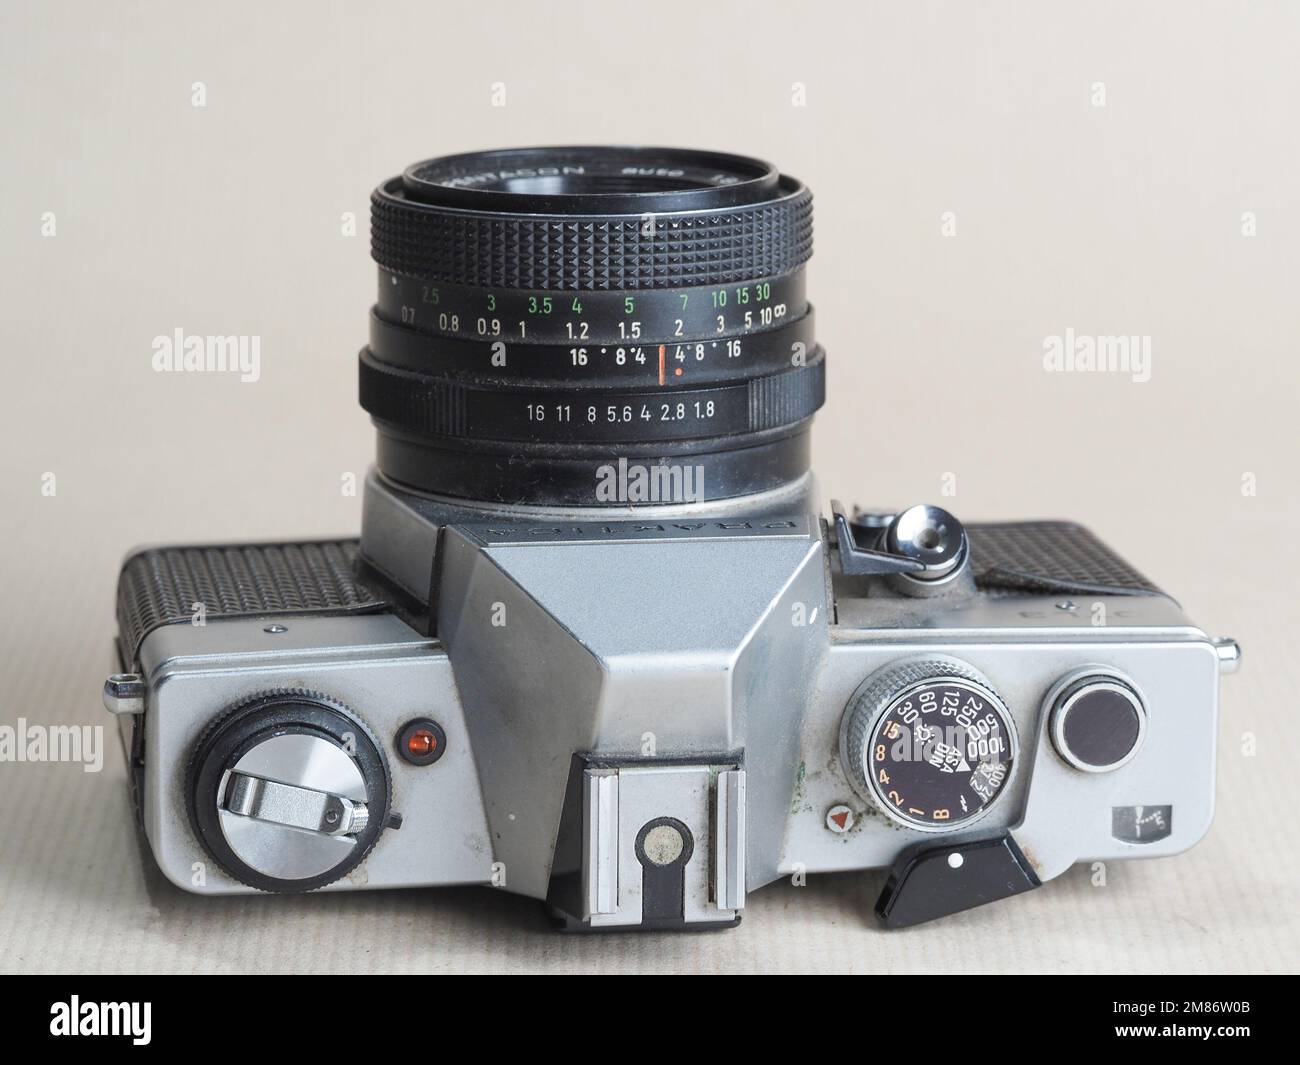 In questa foto, fotocamera Praktica DTL3 con obiettivo Pentacon Multi Coating da 1.8/50 mm. Pentacon Praktica DTL3 è una fotocamera reflex a obiettivo singolo della Pentacon, società di Dresda. La telecamera appartiene alla serie L ed è il successore del Praktica LTL2. Prodotto dal 1979 al 1982. Foto Stock